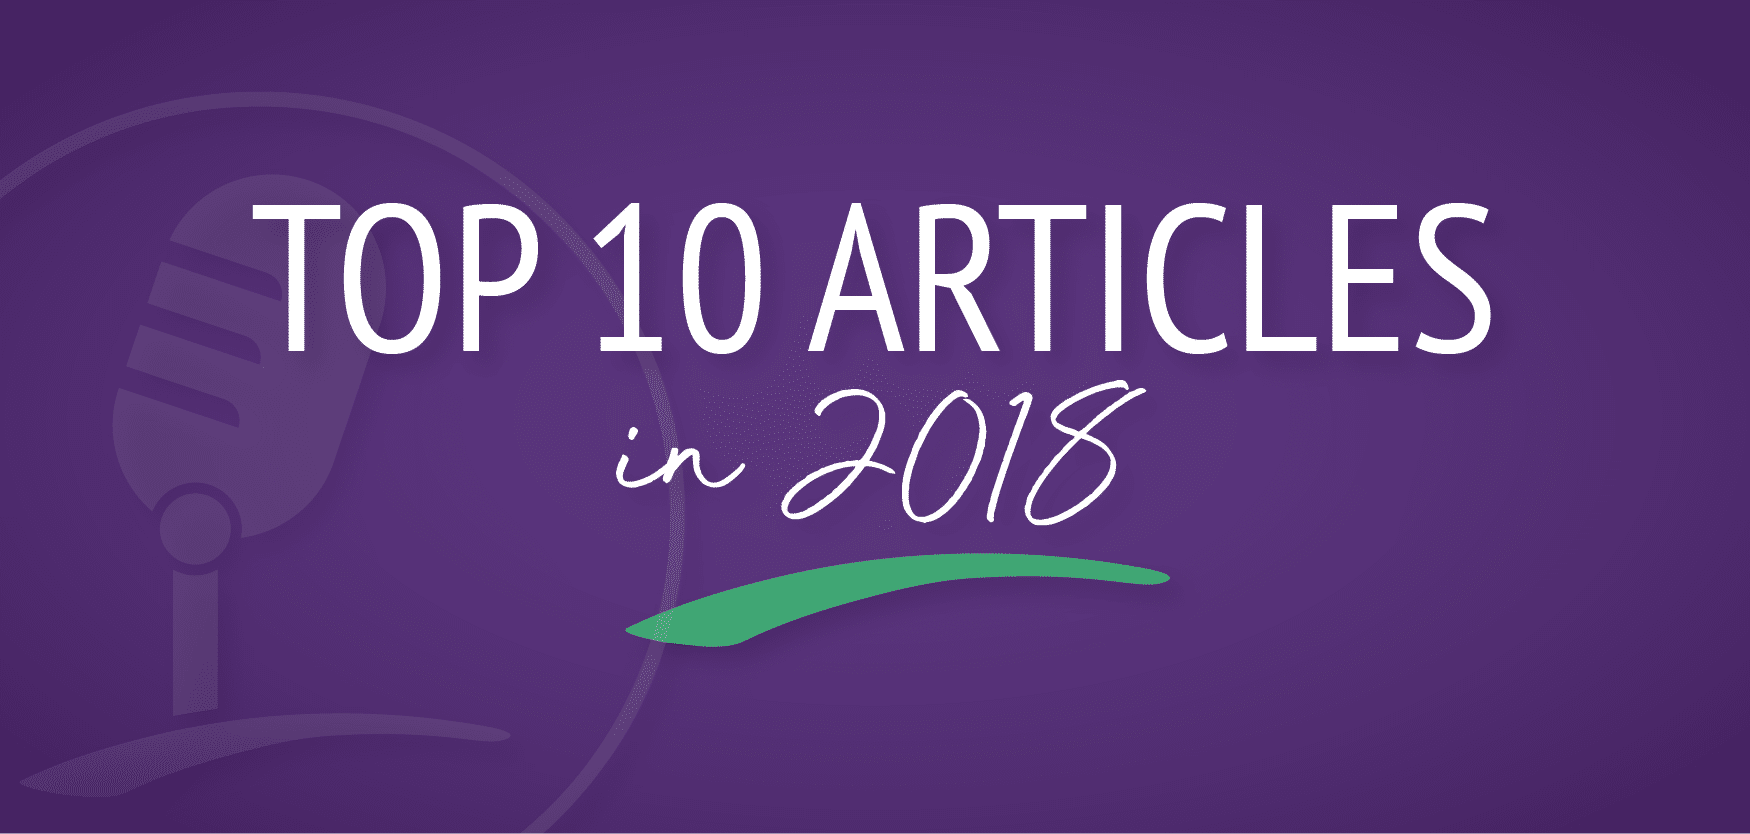 Top 10 Articles 2018